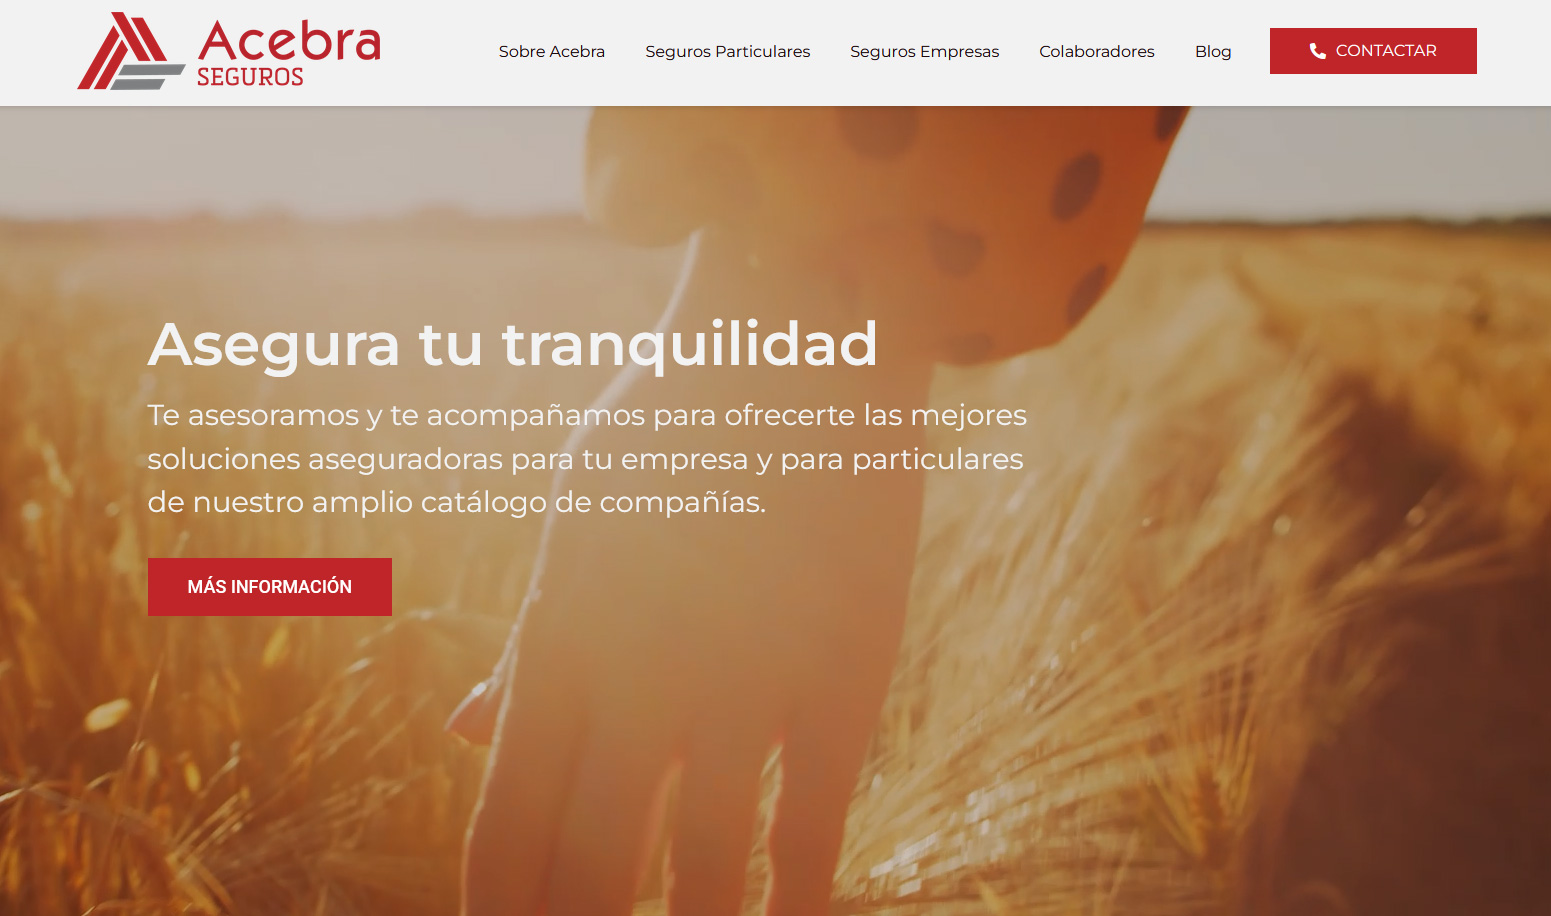 Acebra renueva su web y aspira a ser una correduría “top” en España.